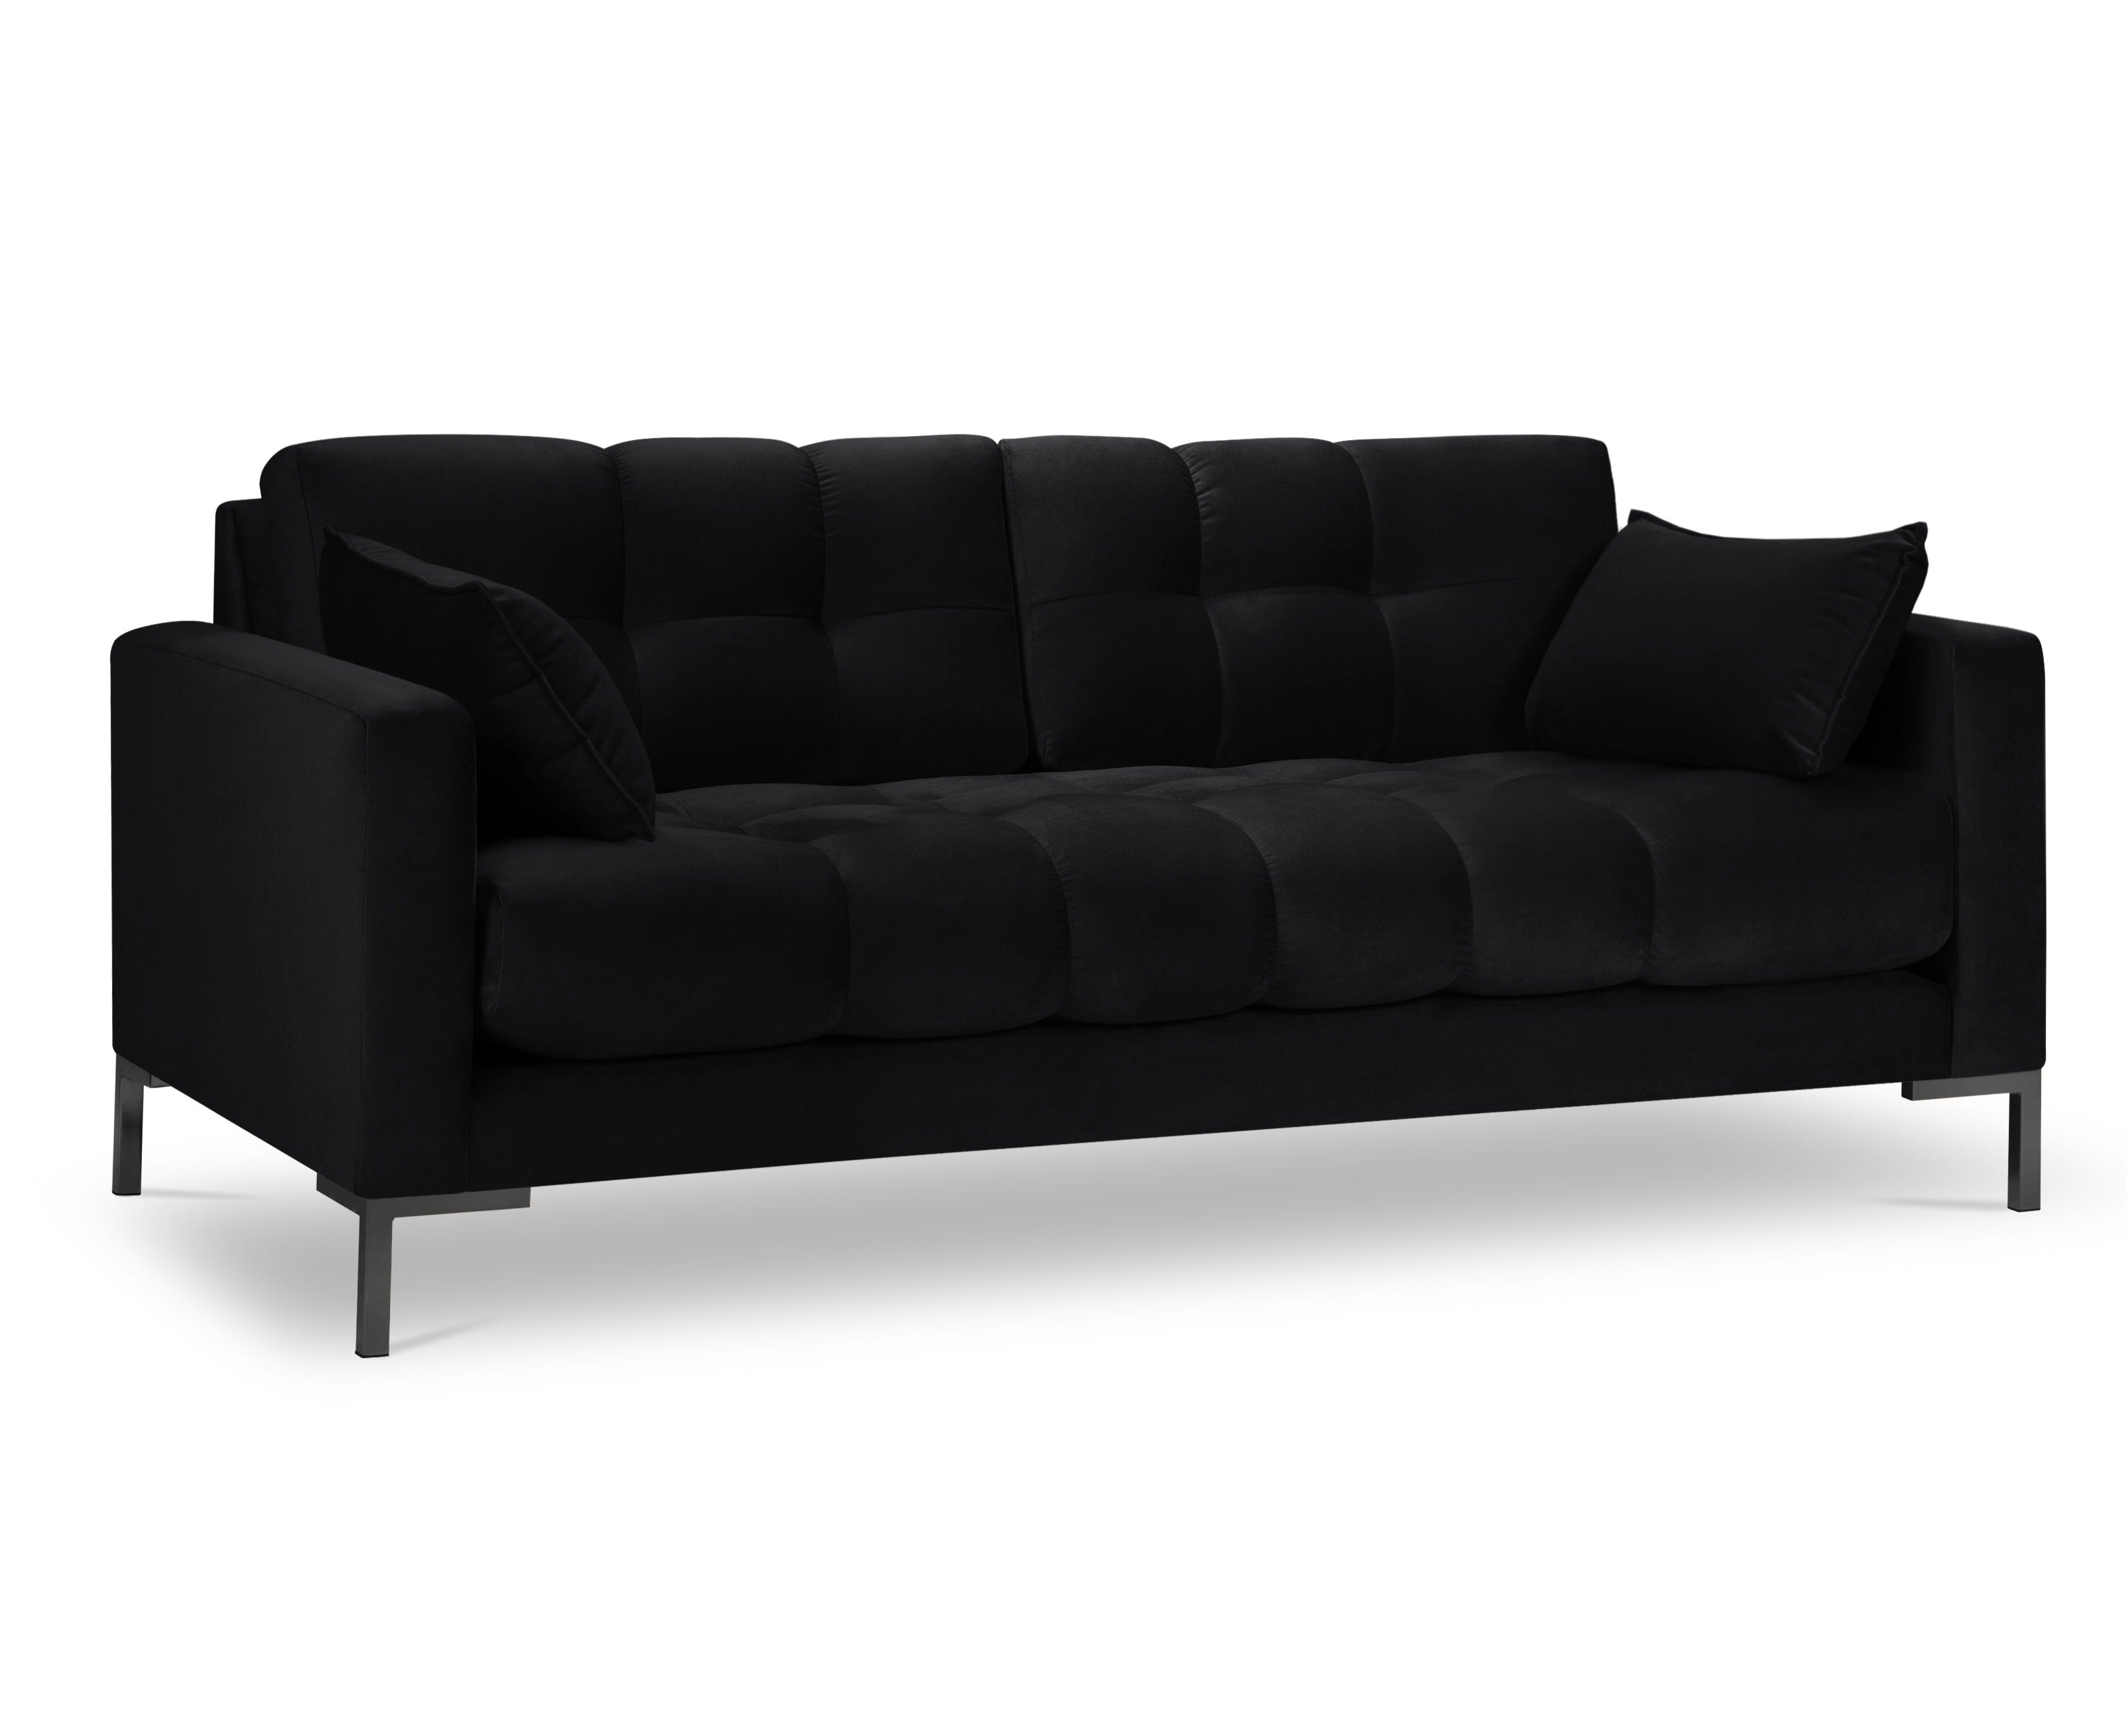 Black 2-person velvet sofa